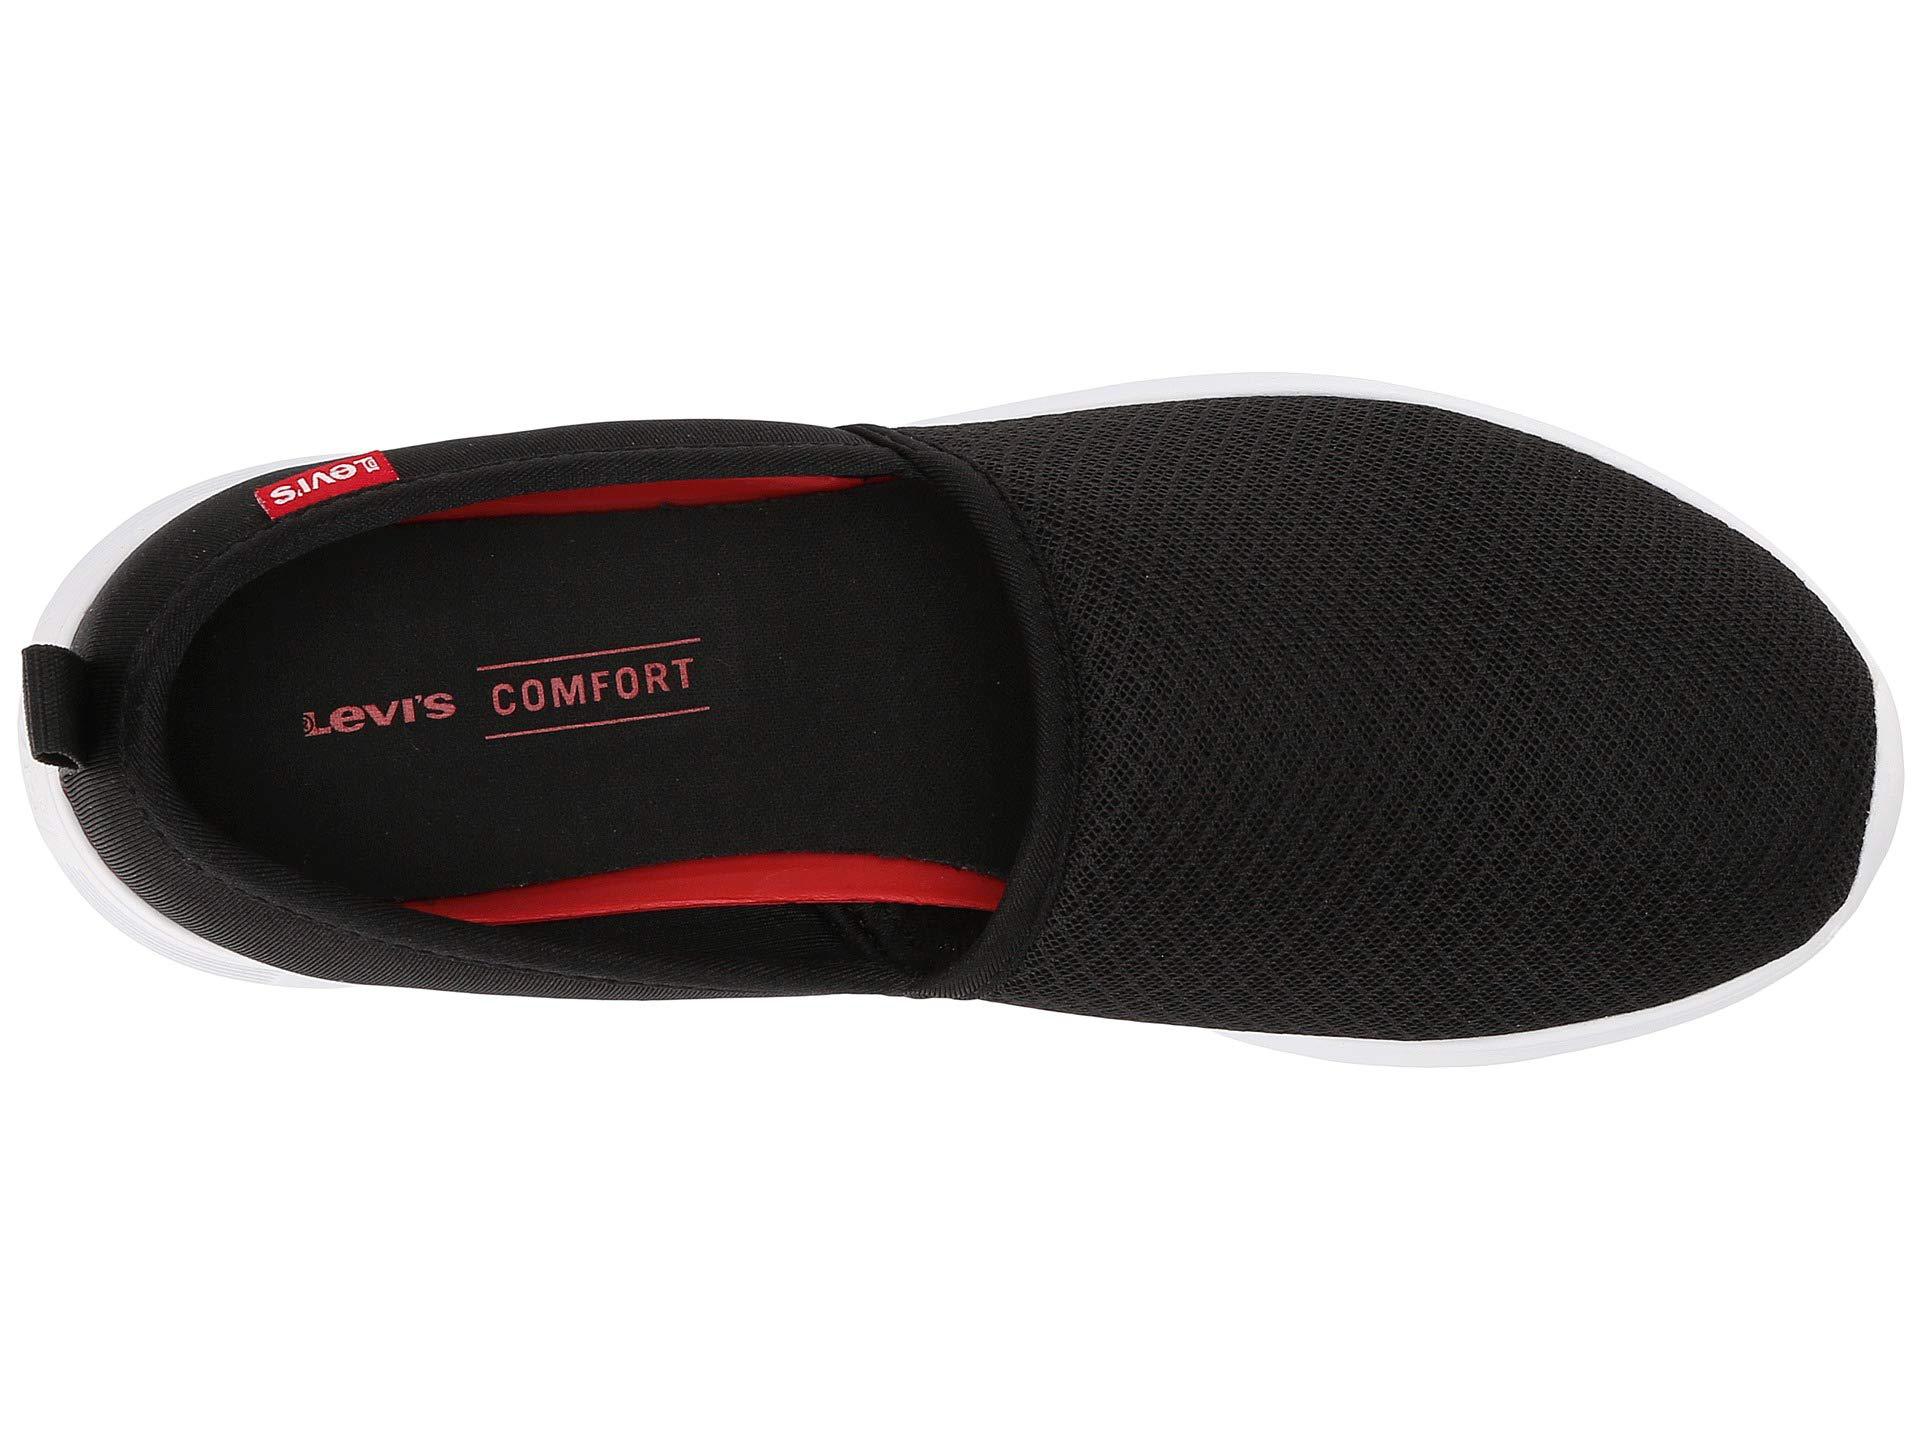 levi's comfort shoes black